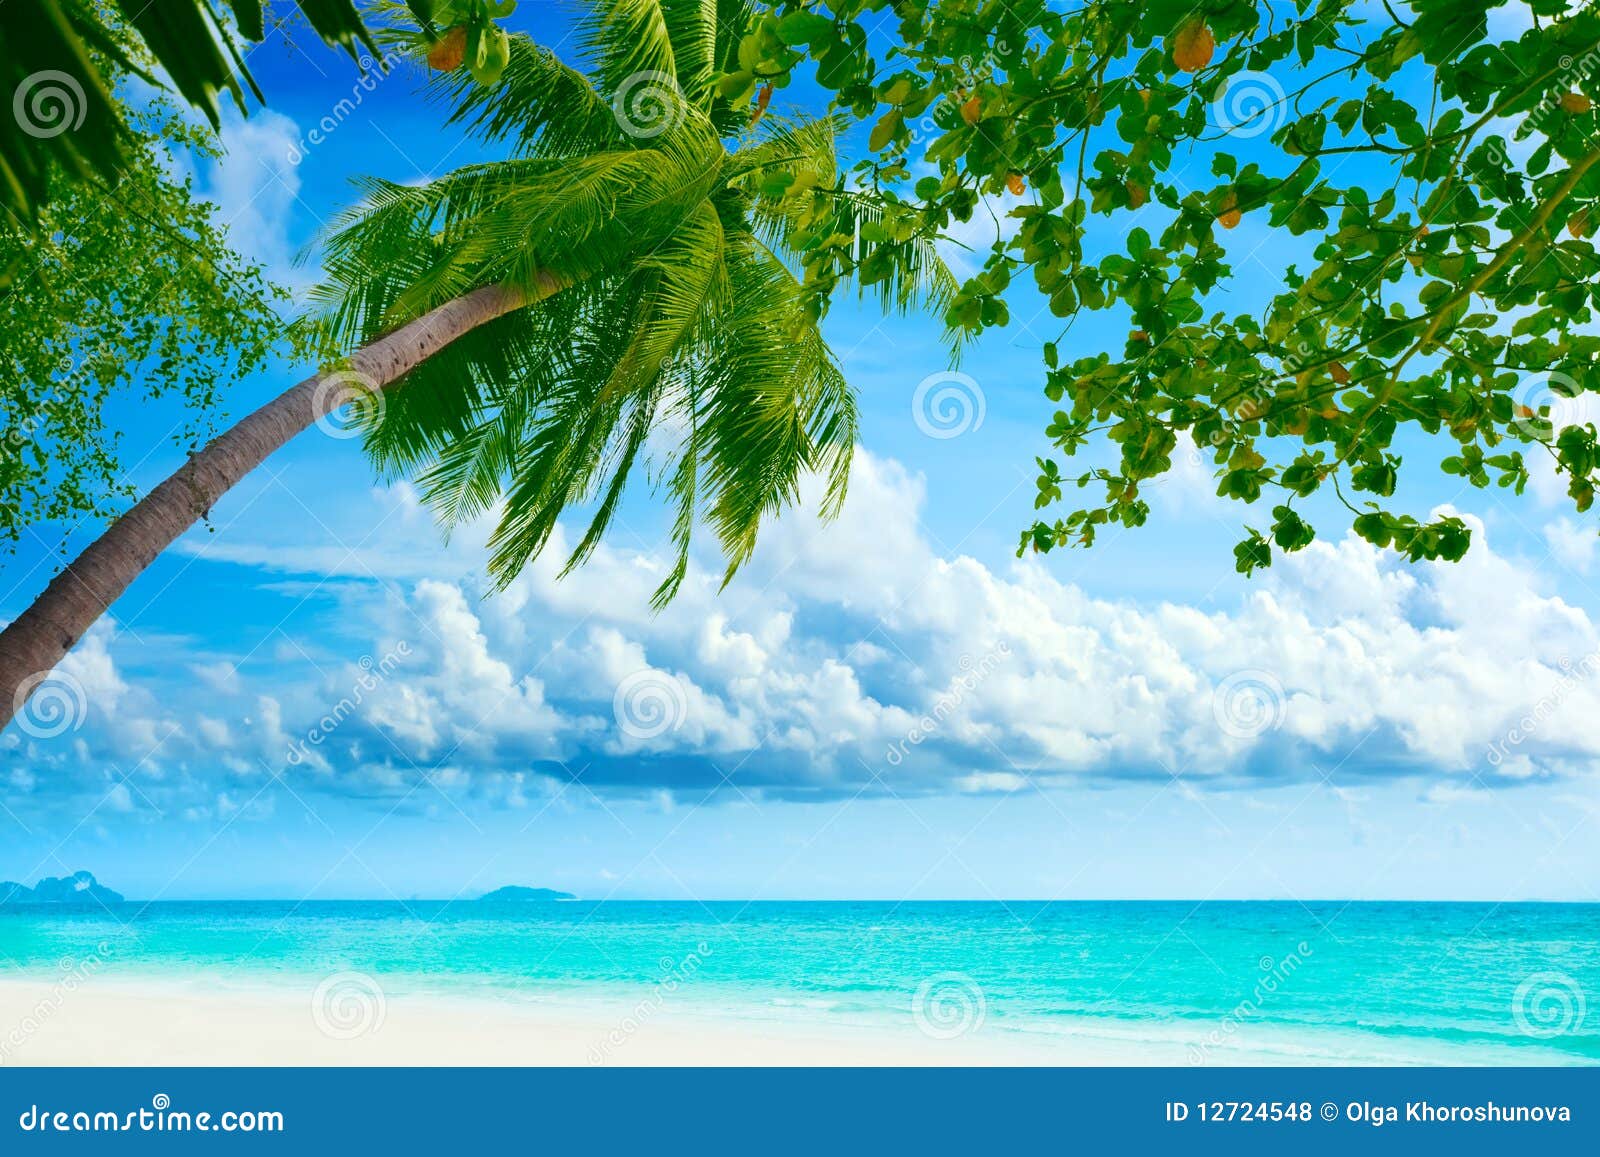 palmtree on the beach